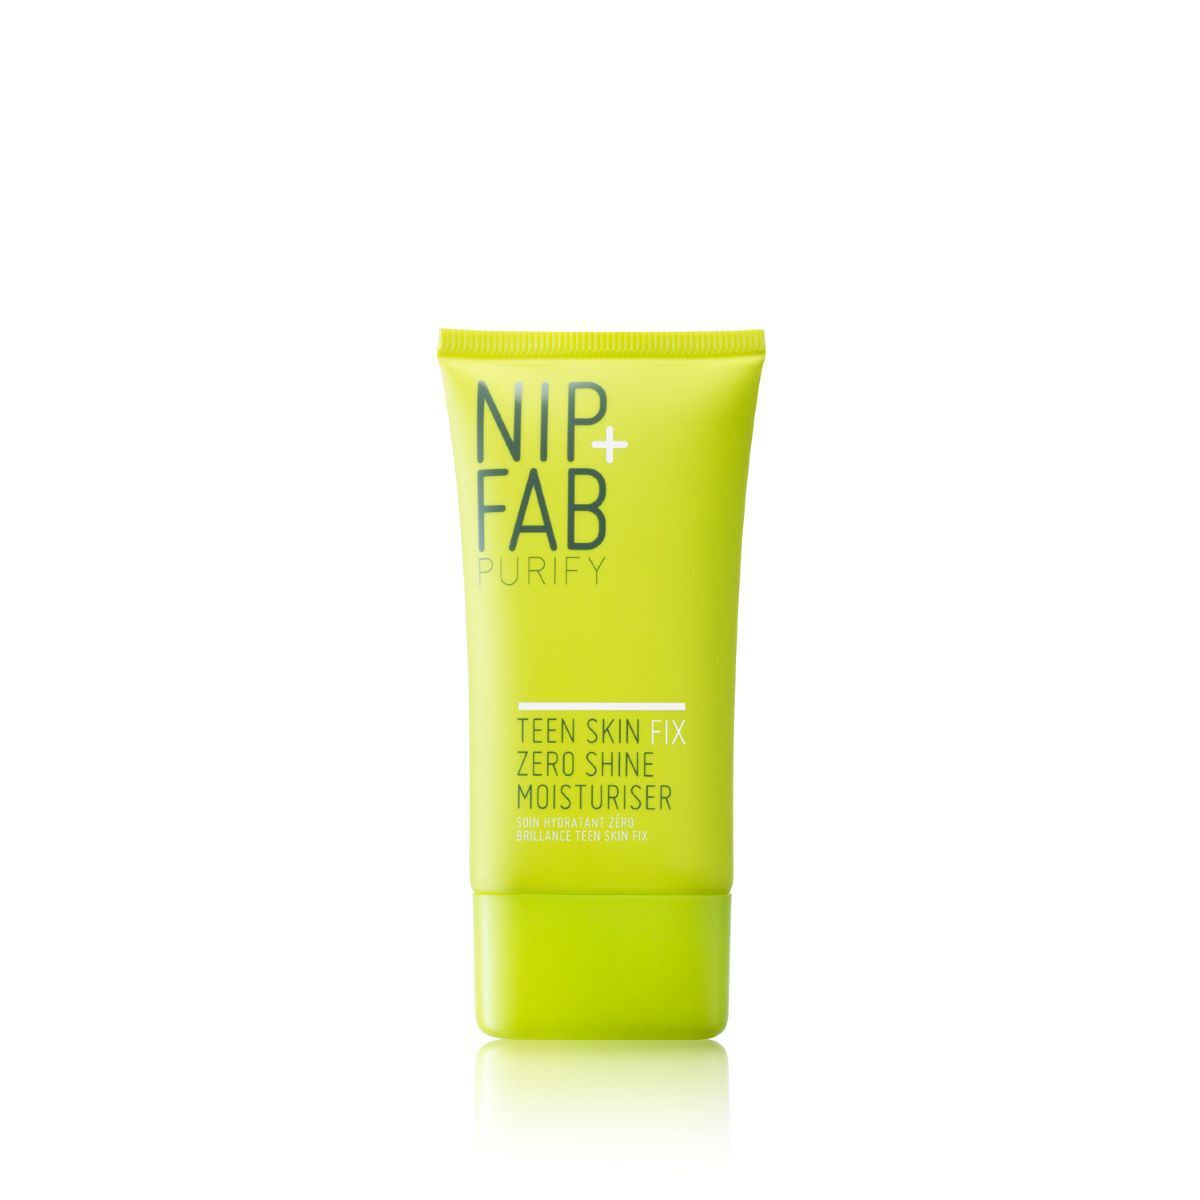 Крем для лица Nip+Fab Teen Skin, 40 мл дом природы green detox крем для лица интенсивное увлажнение для нормальной и жирной кожи 25 мл